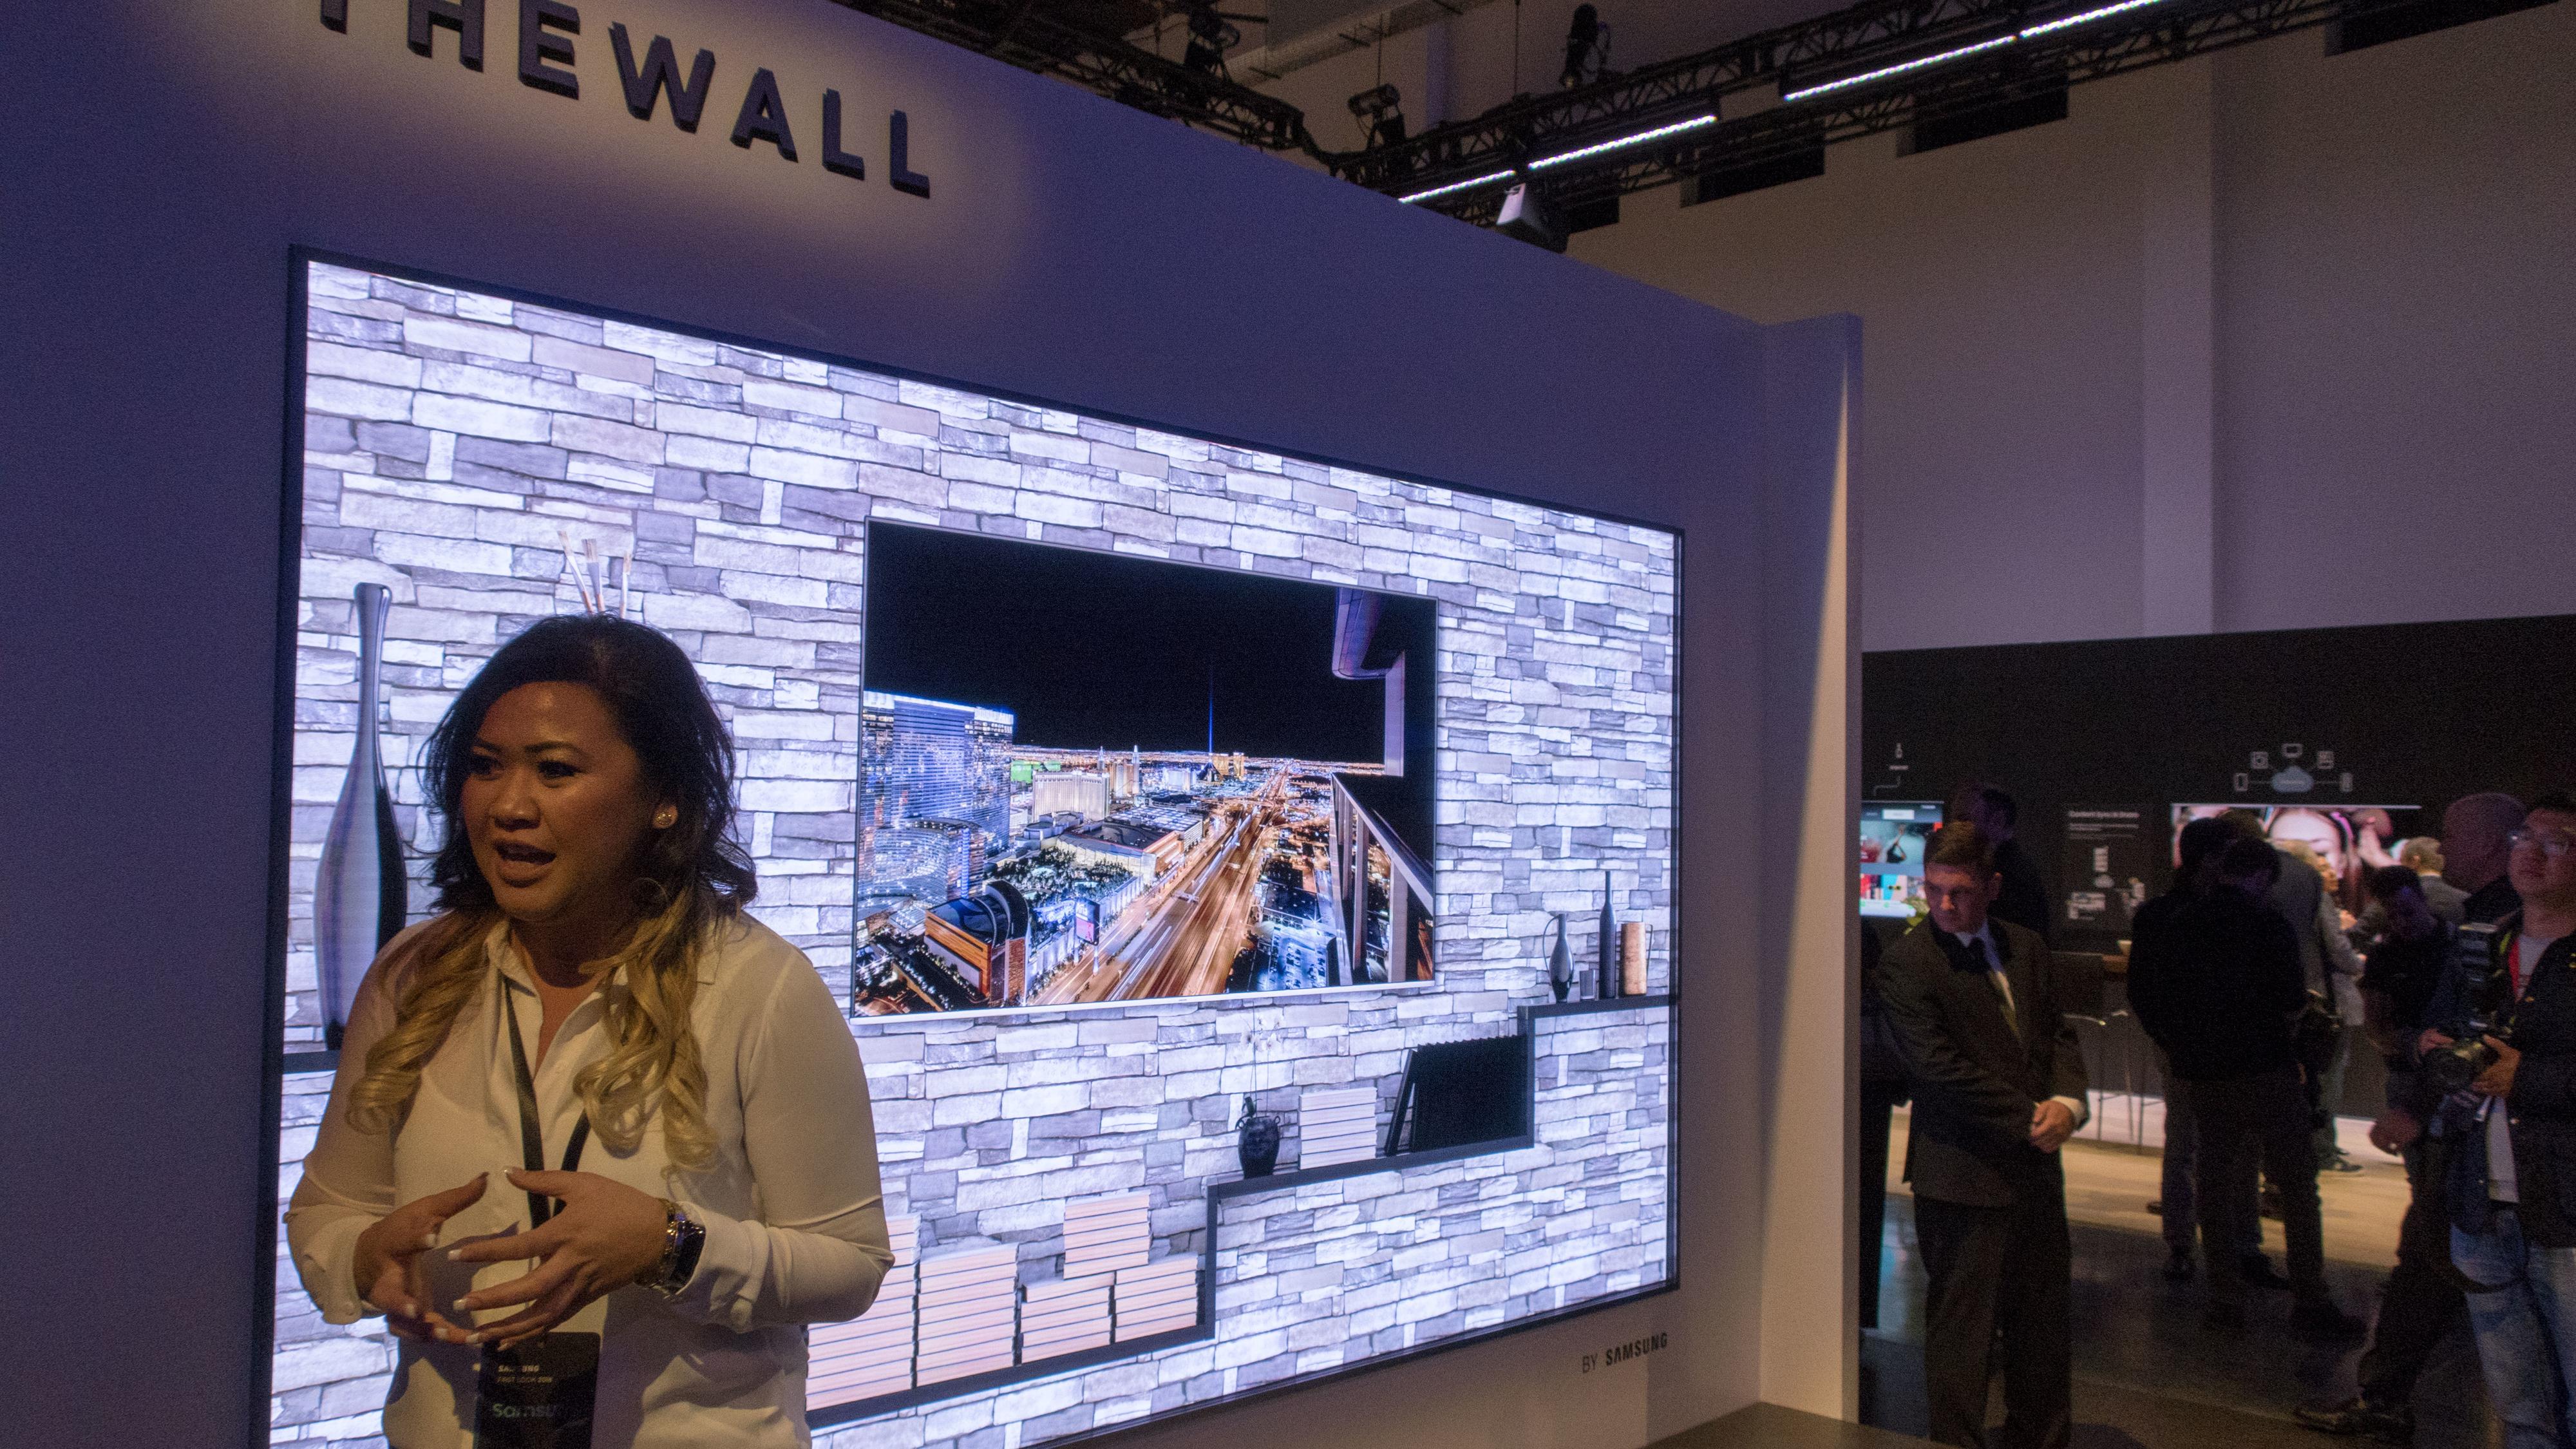 The Wall er navnet på Samsungs første MIcroLED-TV, og konfigurasjonen vi fikk se målte hele 146 tommer i størrelse. Bilde: Ole Henrik Johansen / Tek.no